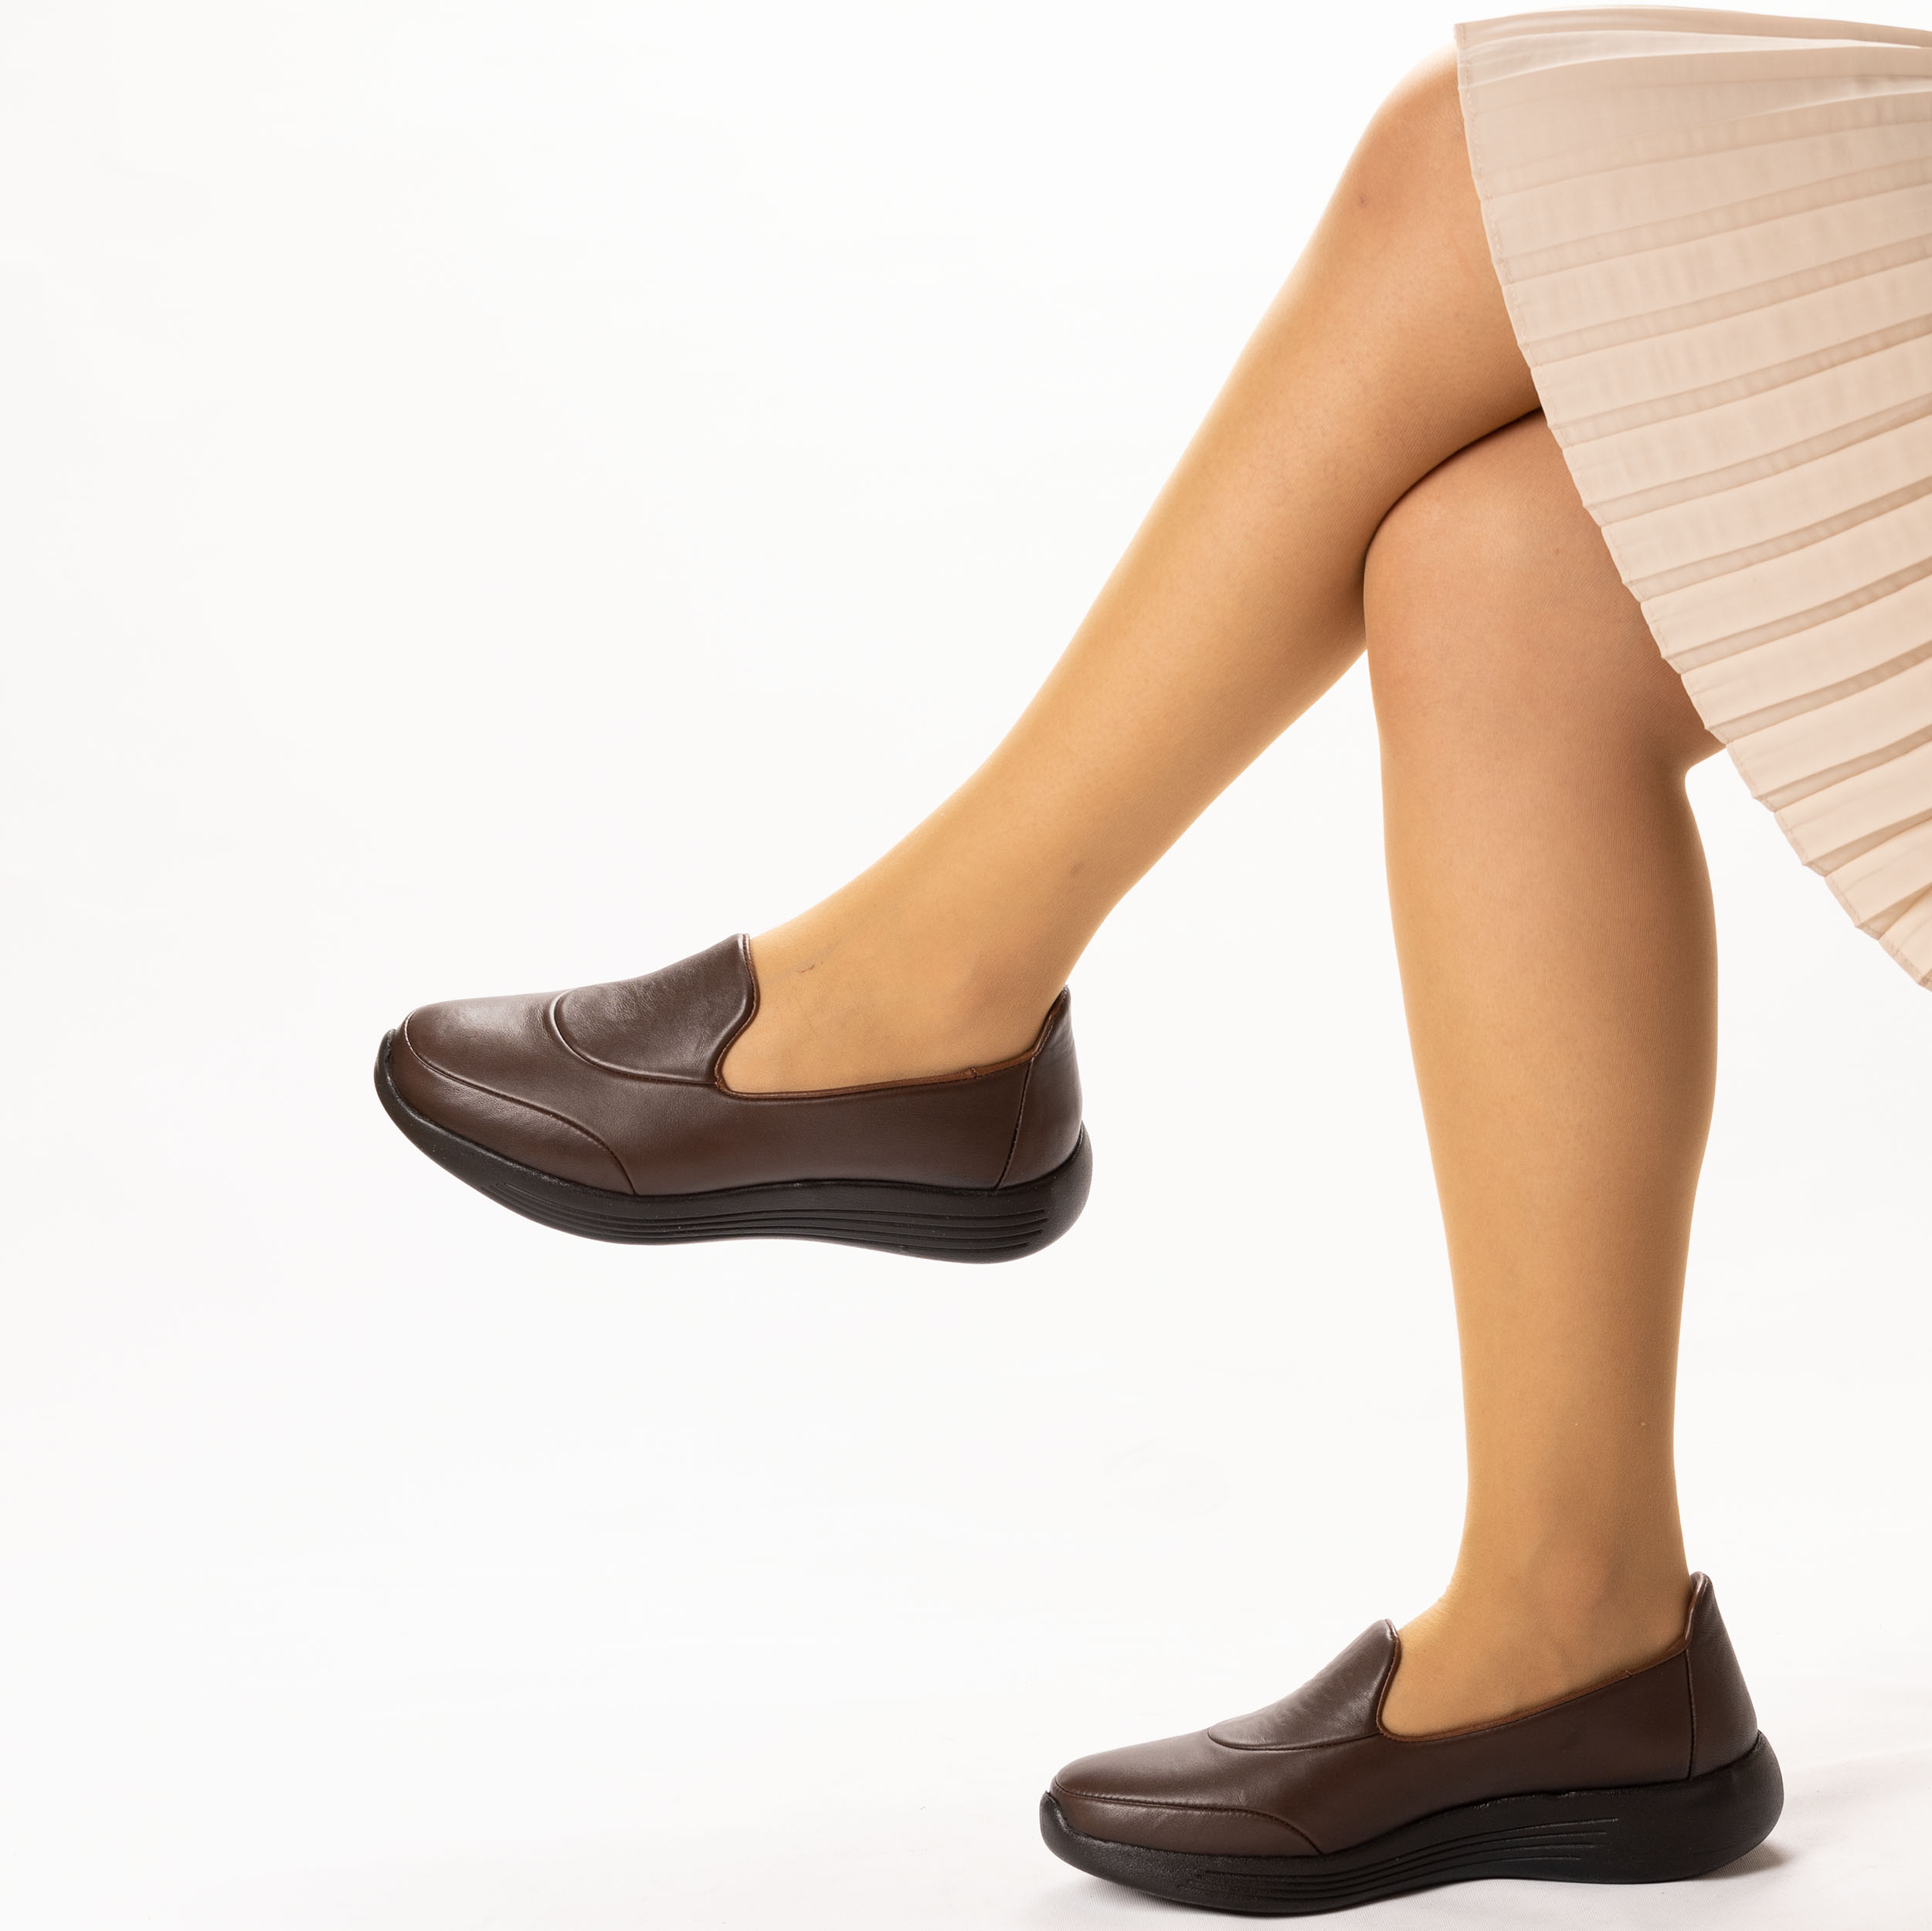 Kadın Hakiki Deri Anatomik Hafif Konfort Günlük Ayakkabı, Renk: Kahverengi, Beden: 36